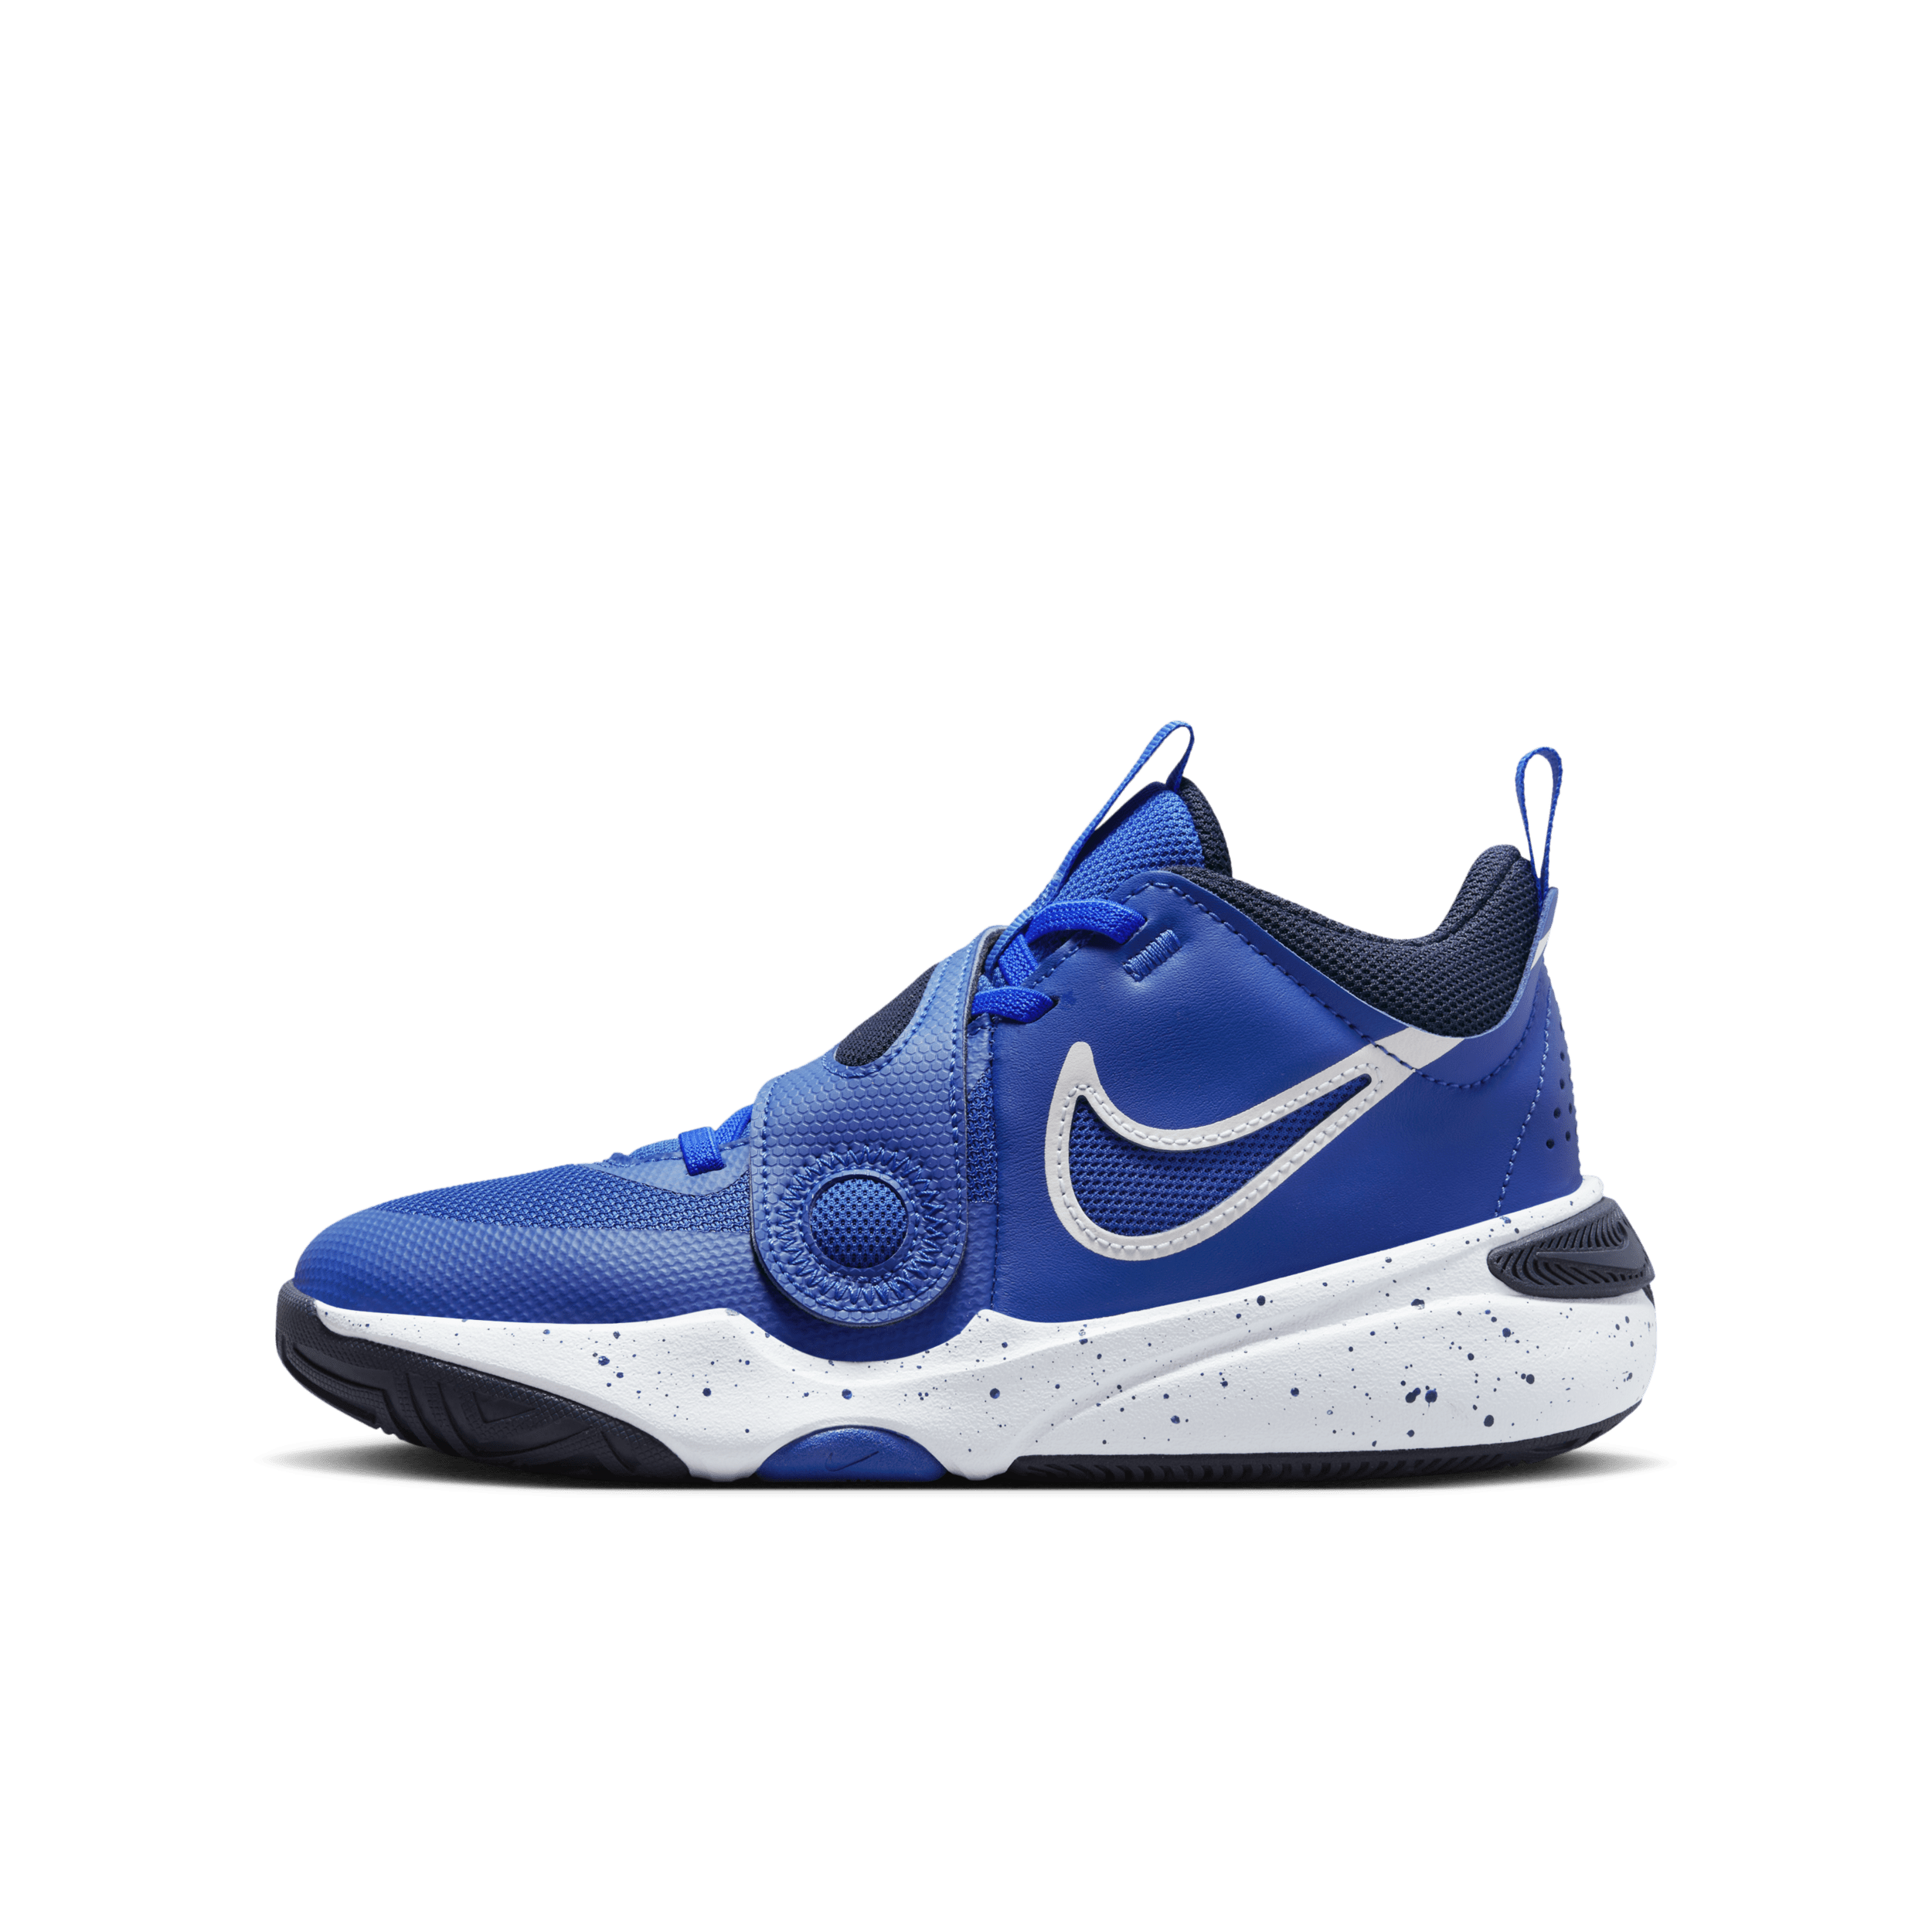 Nike Team Hustle D 11-basketballsko til større børn - blå